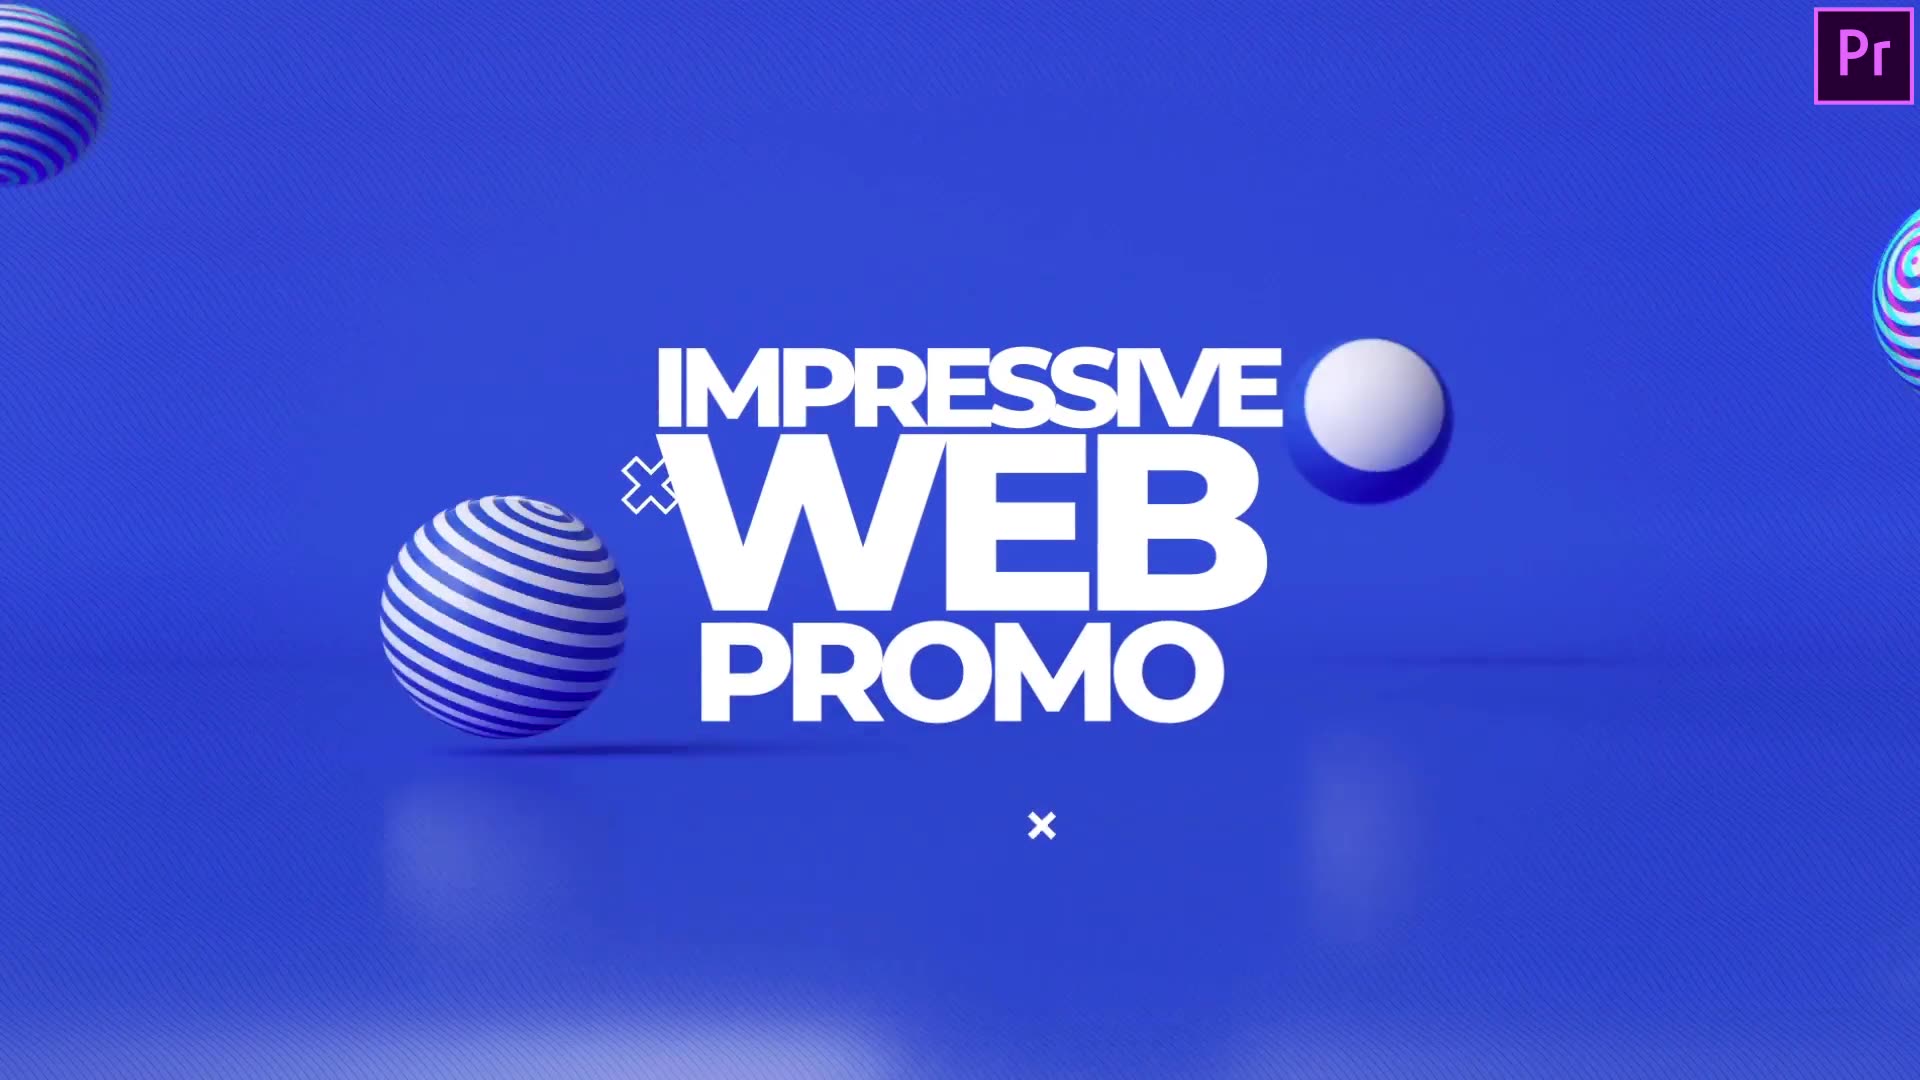 Impressive Website Promo Web Demo Video Premiere Pro Videohive 34227400 Premiere Pro Image 10